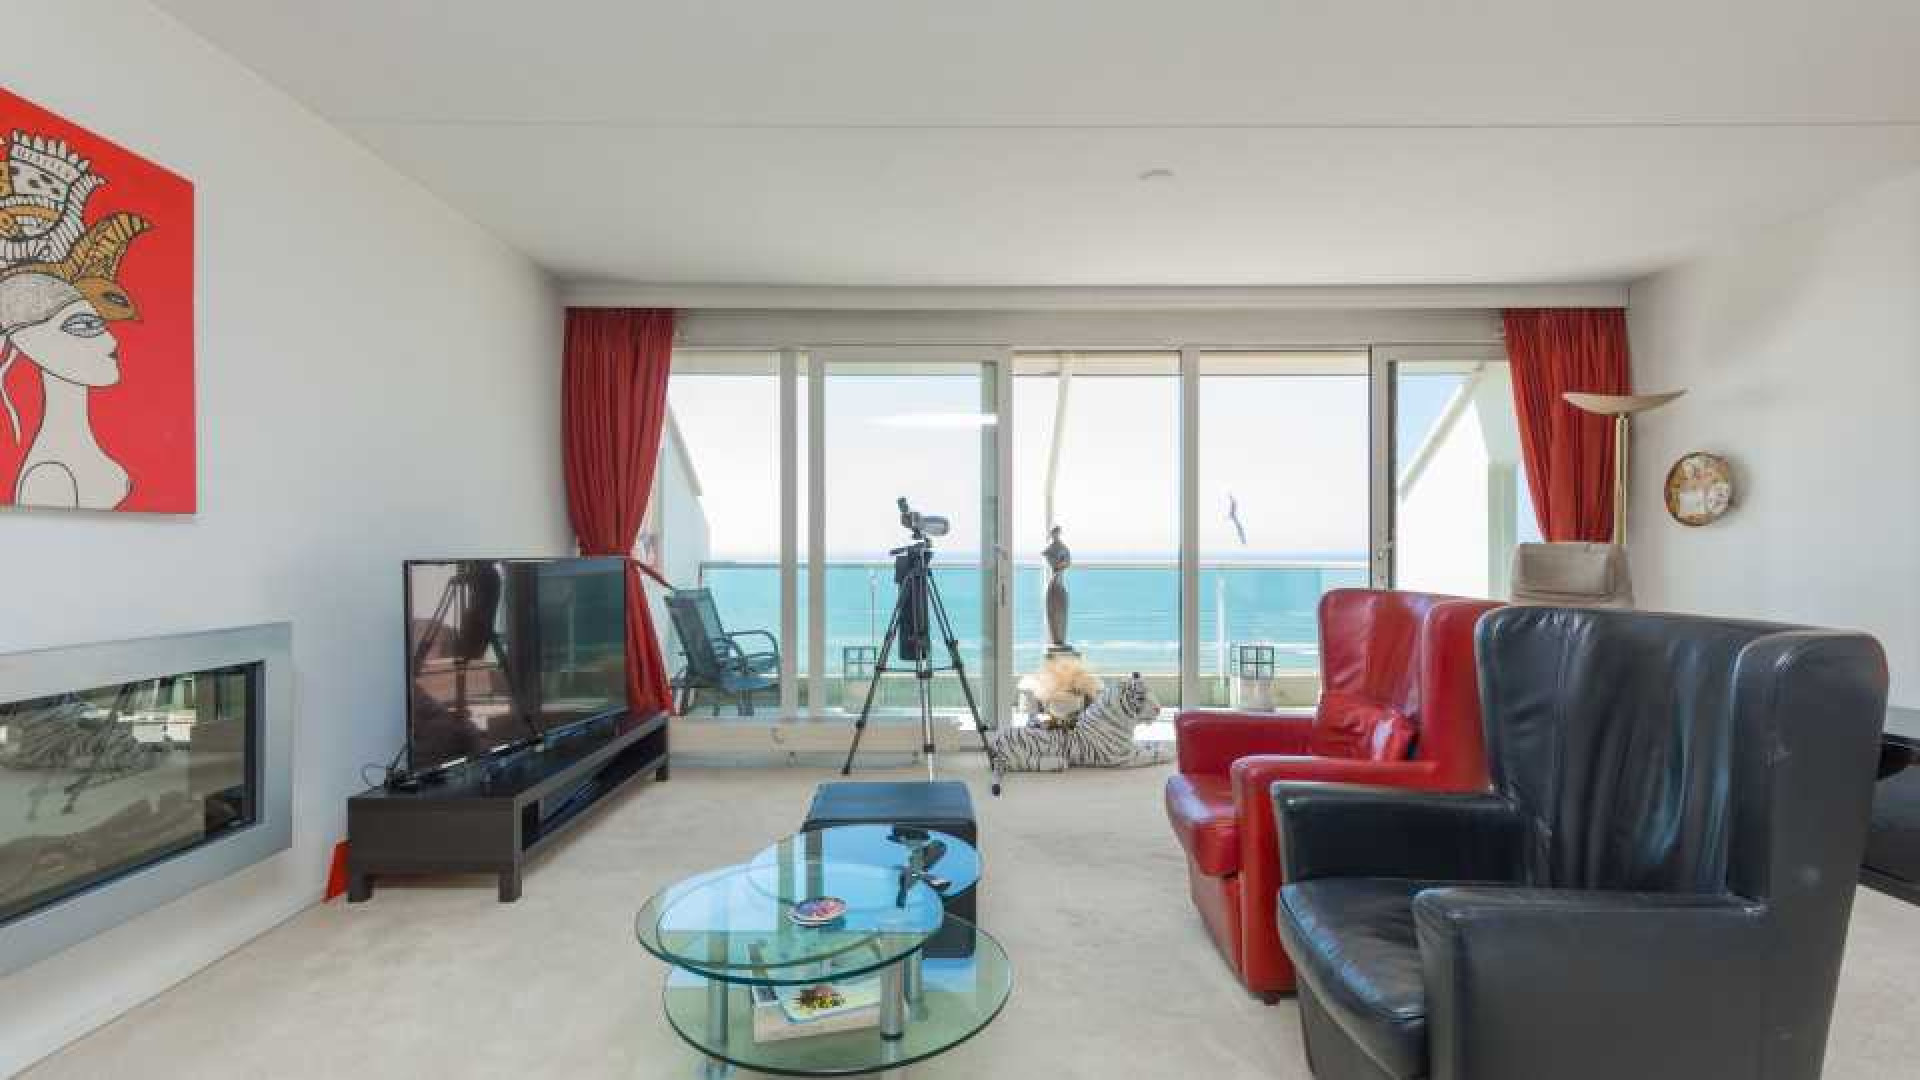 Binnenkijken in dit prachtige penthouse met zeezicht van Ronald Koeman. Zie foto's